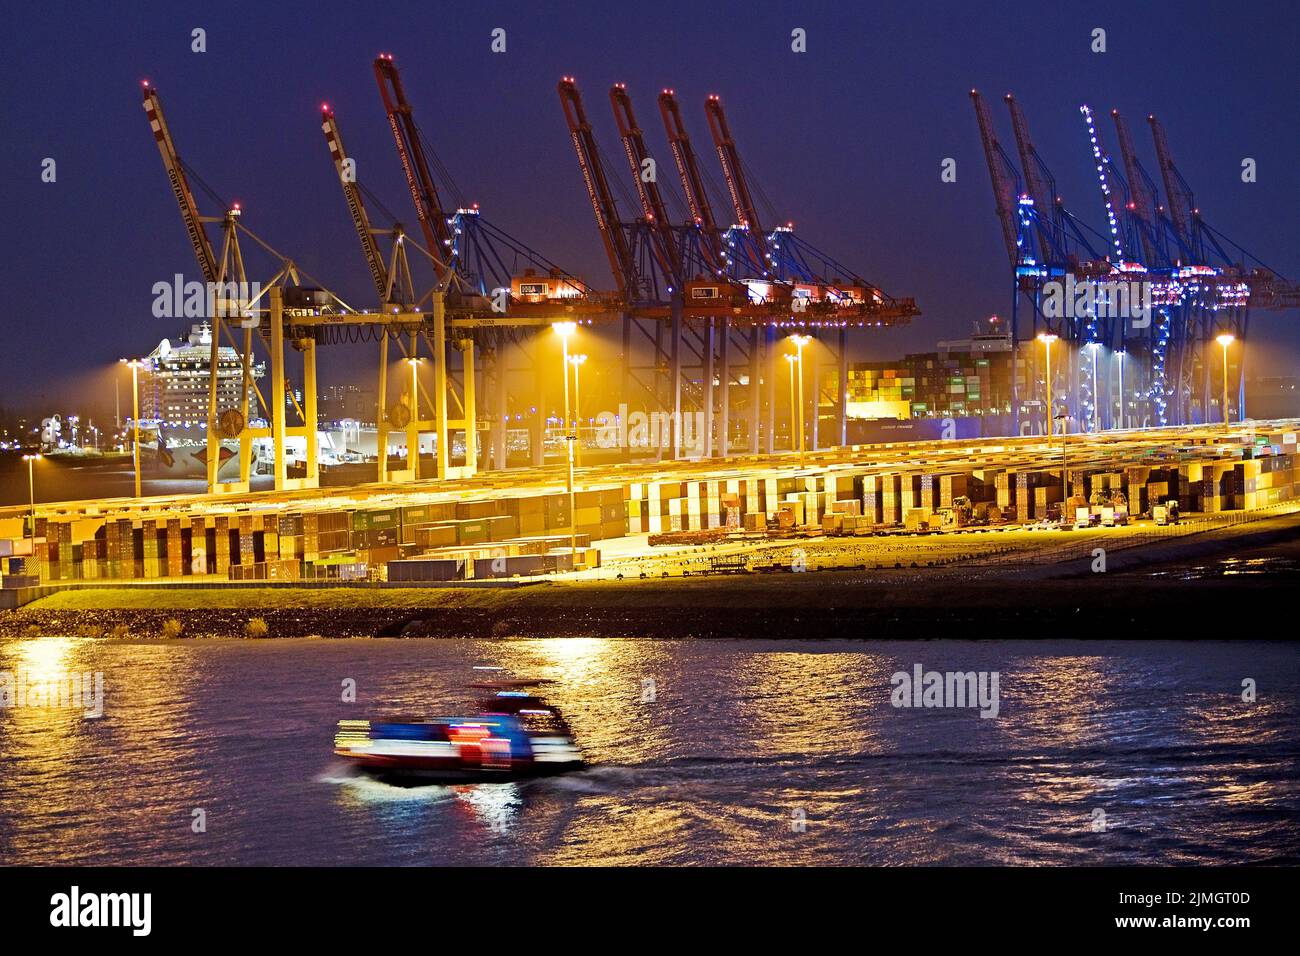 Grues de chargement au terminal à conteneurs de Tollerort dans la soirée, Port de Hambourg, Allemagne Banque D'Images